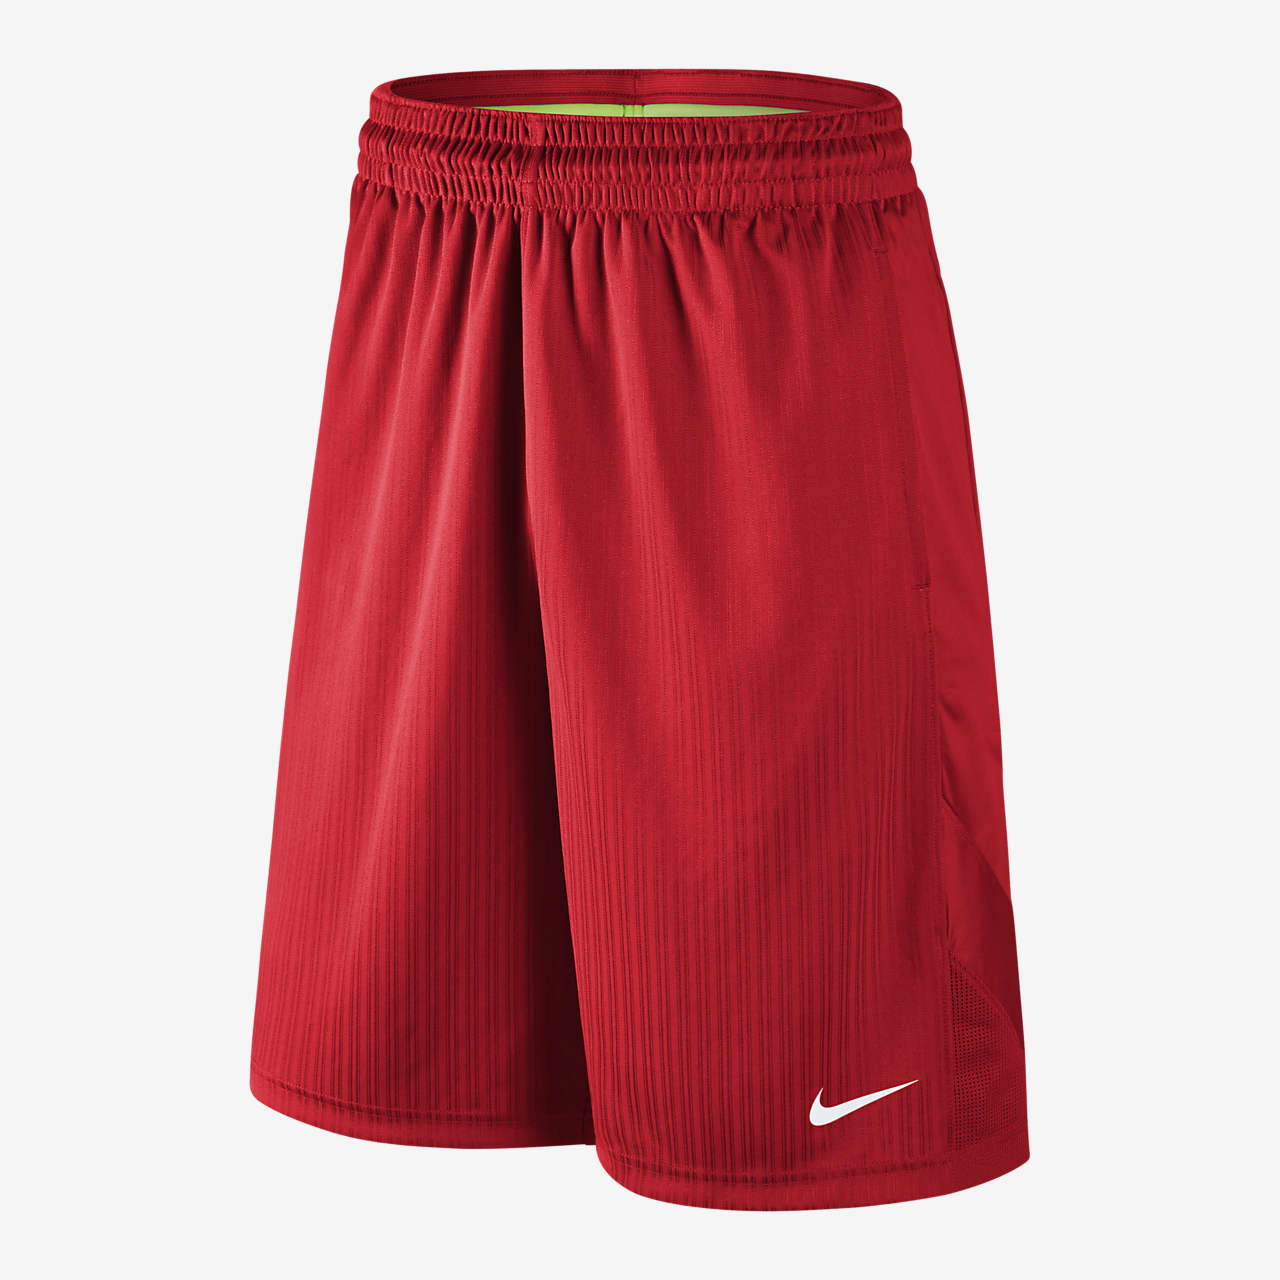 mens nike basketball shorts with pockets